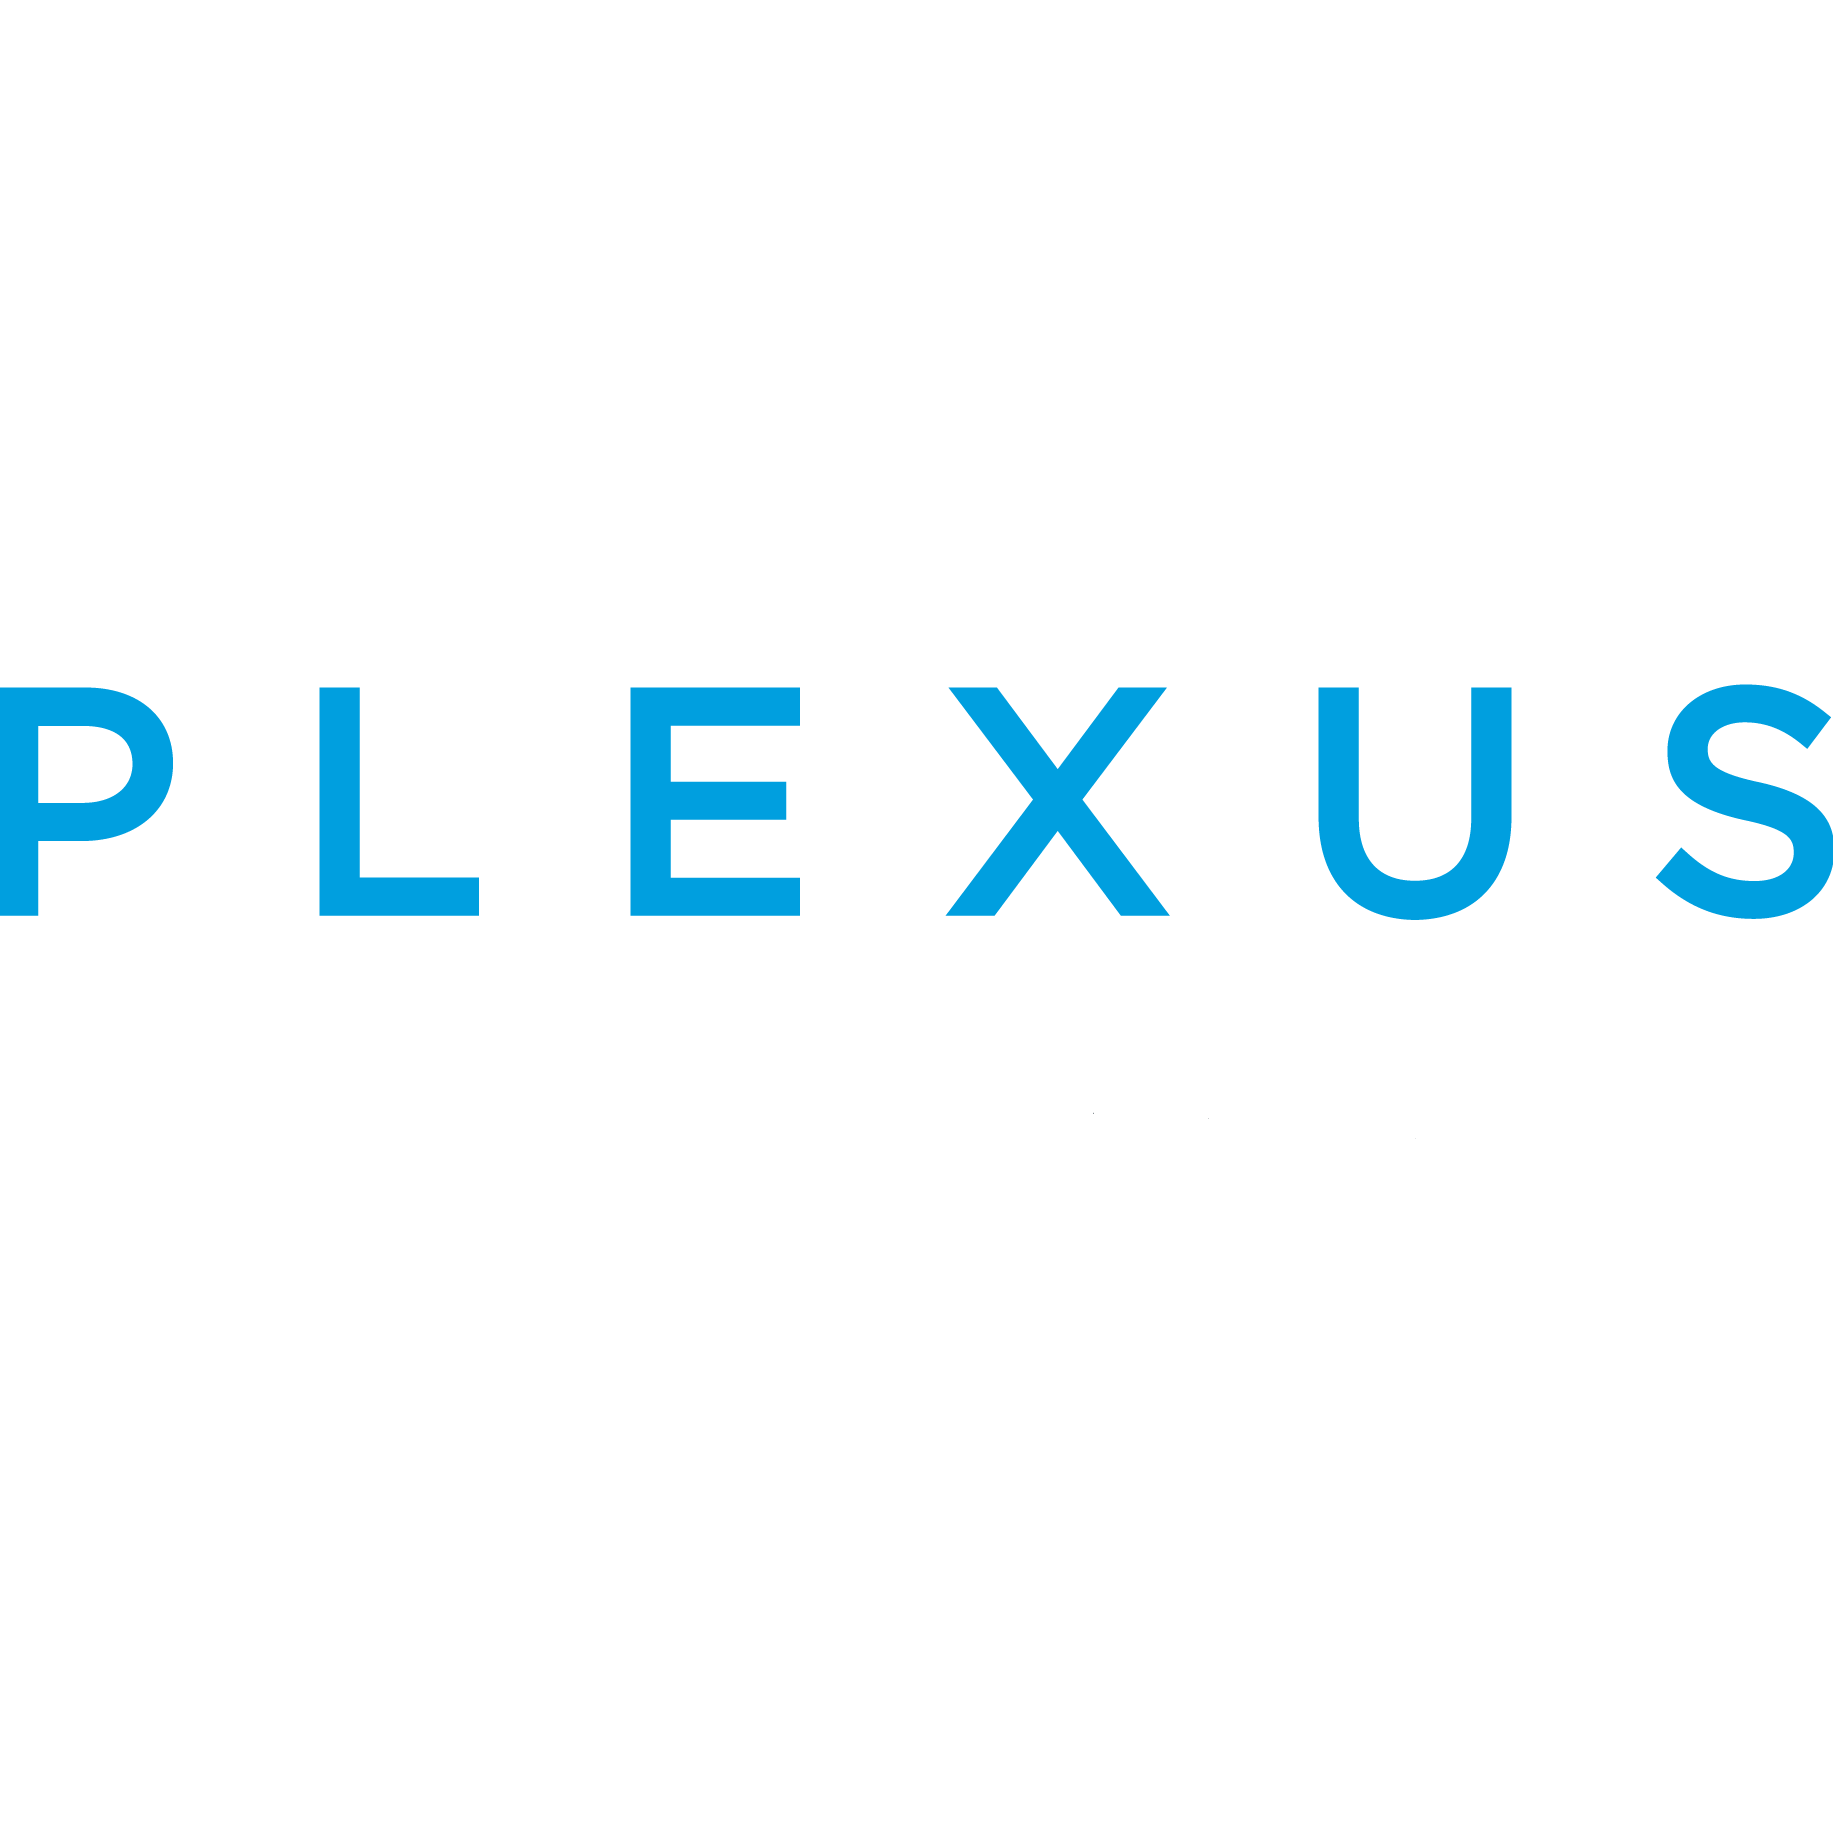 Leading Defendant Insurance Law Firm Plexus Law Announces Partnership with expert.ai 